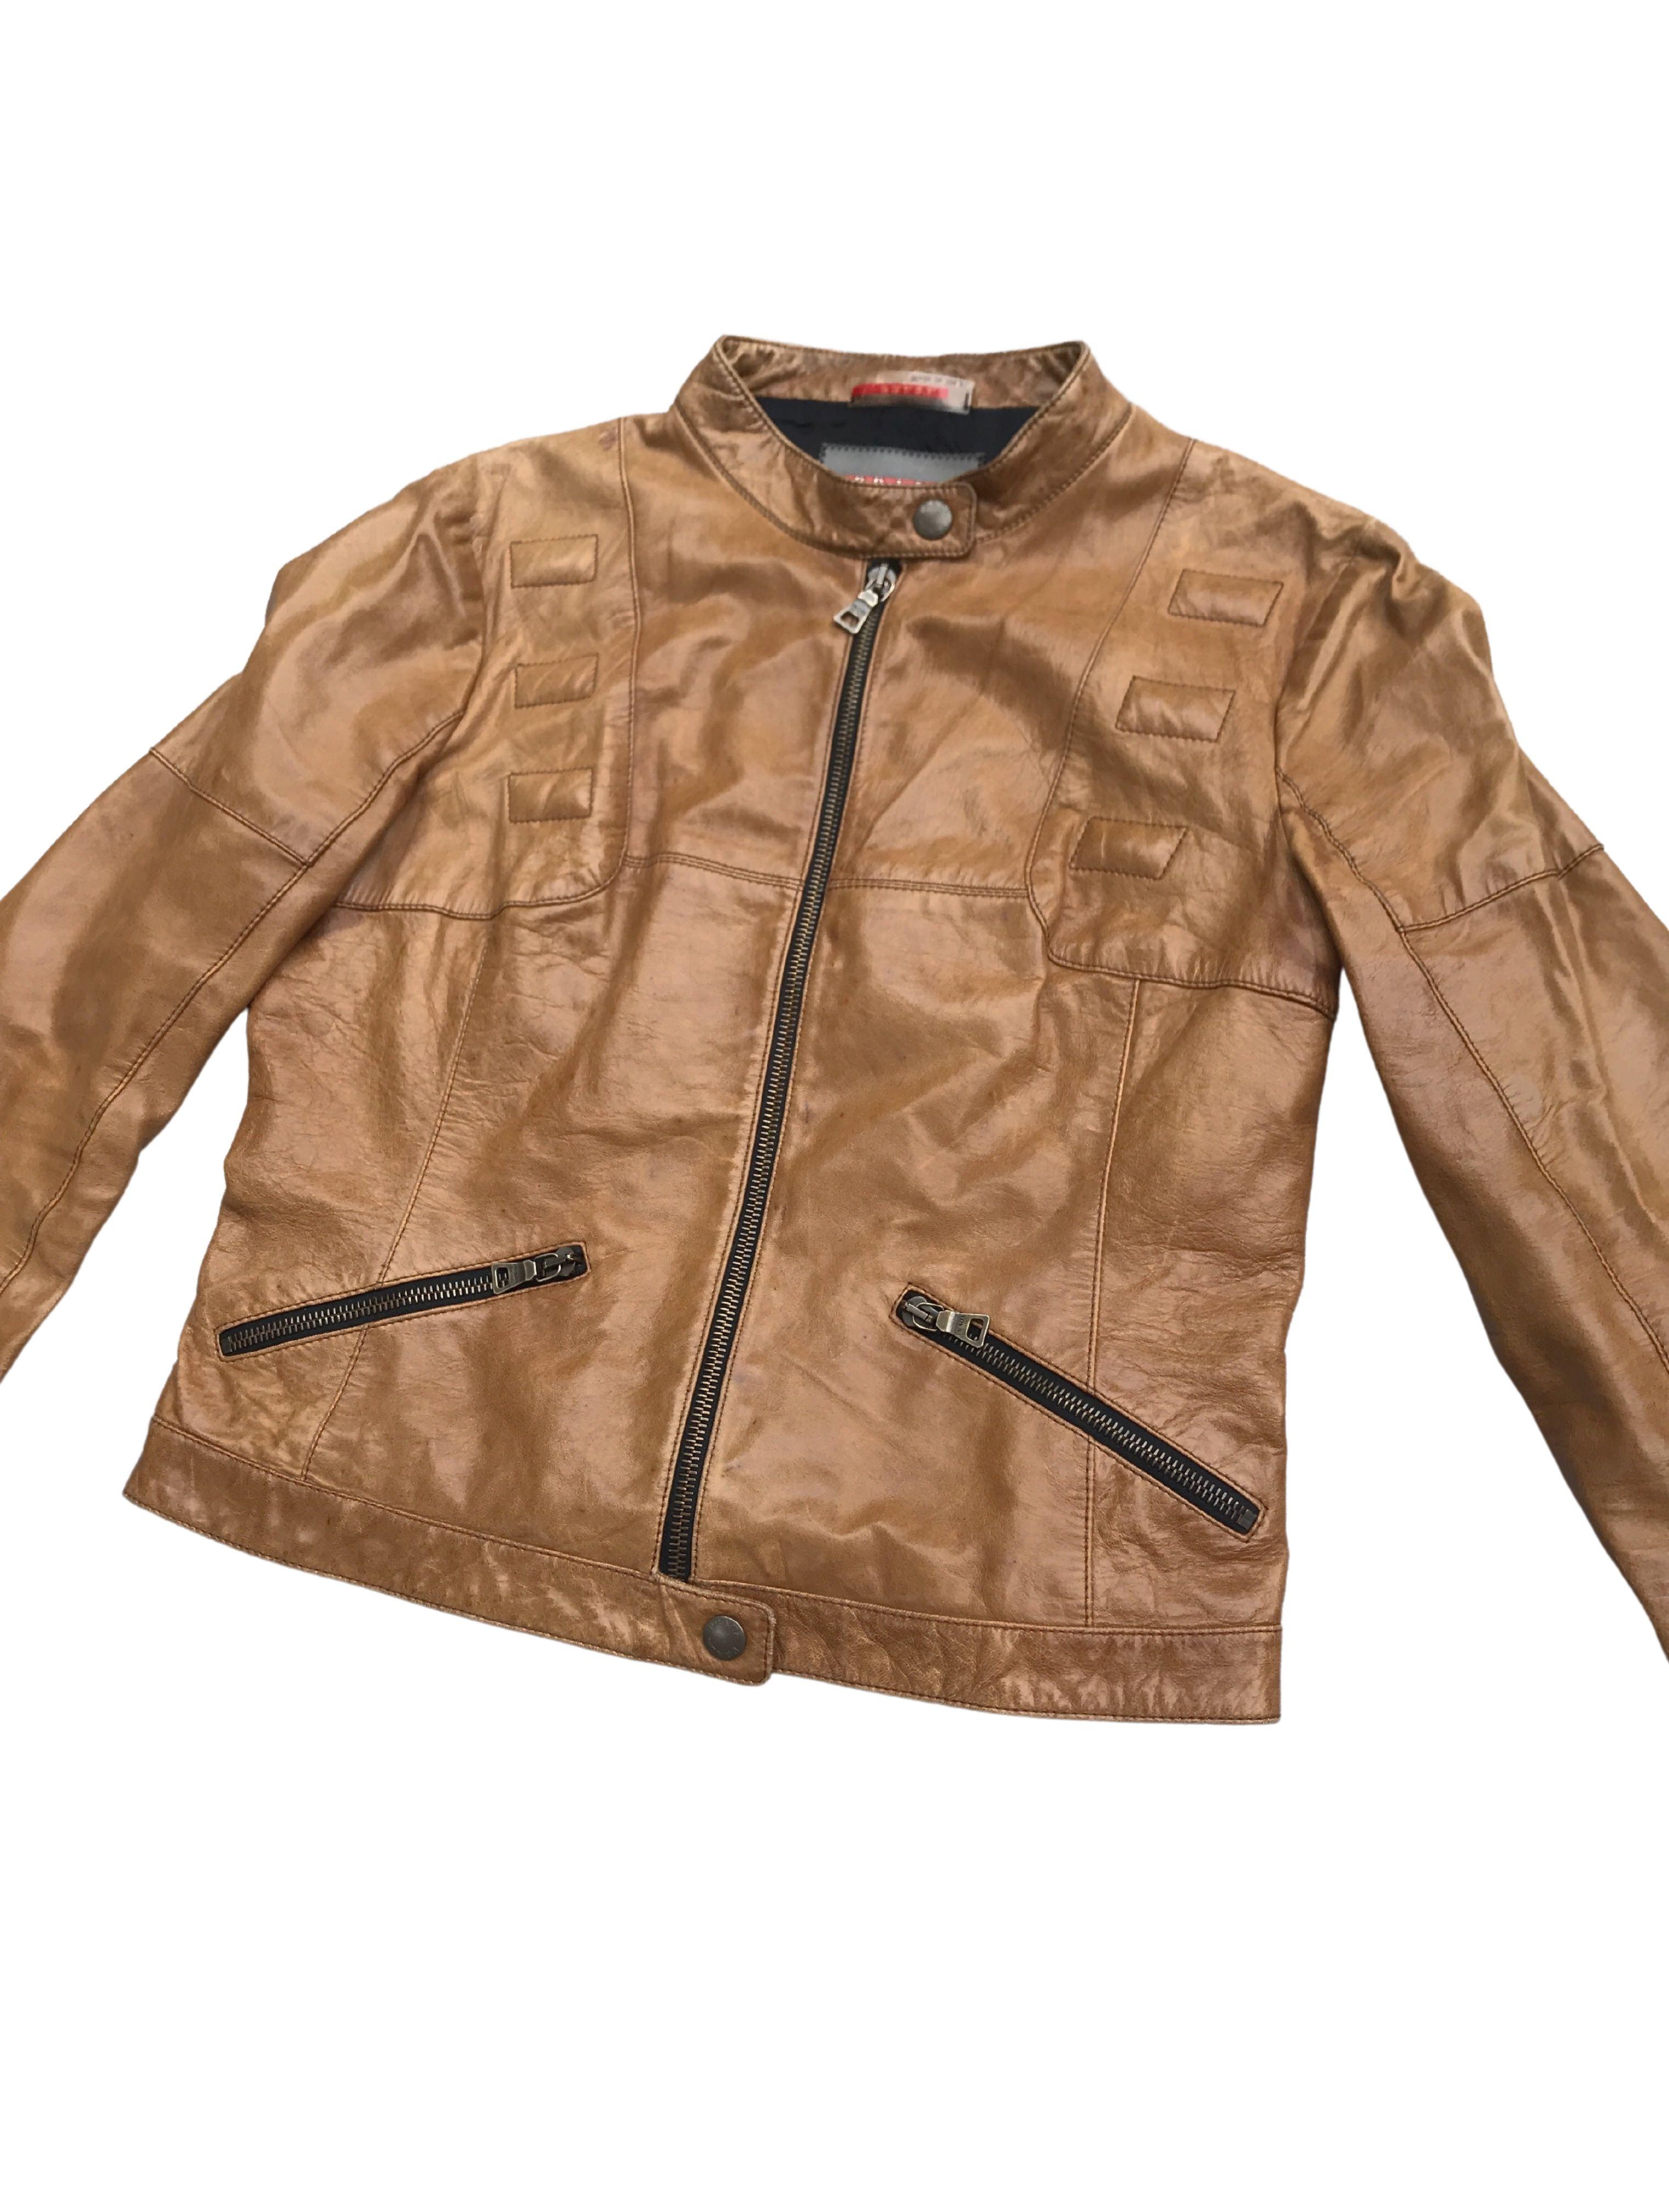 prada leather jacket vintage